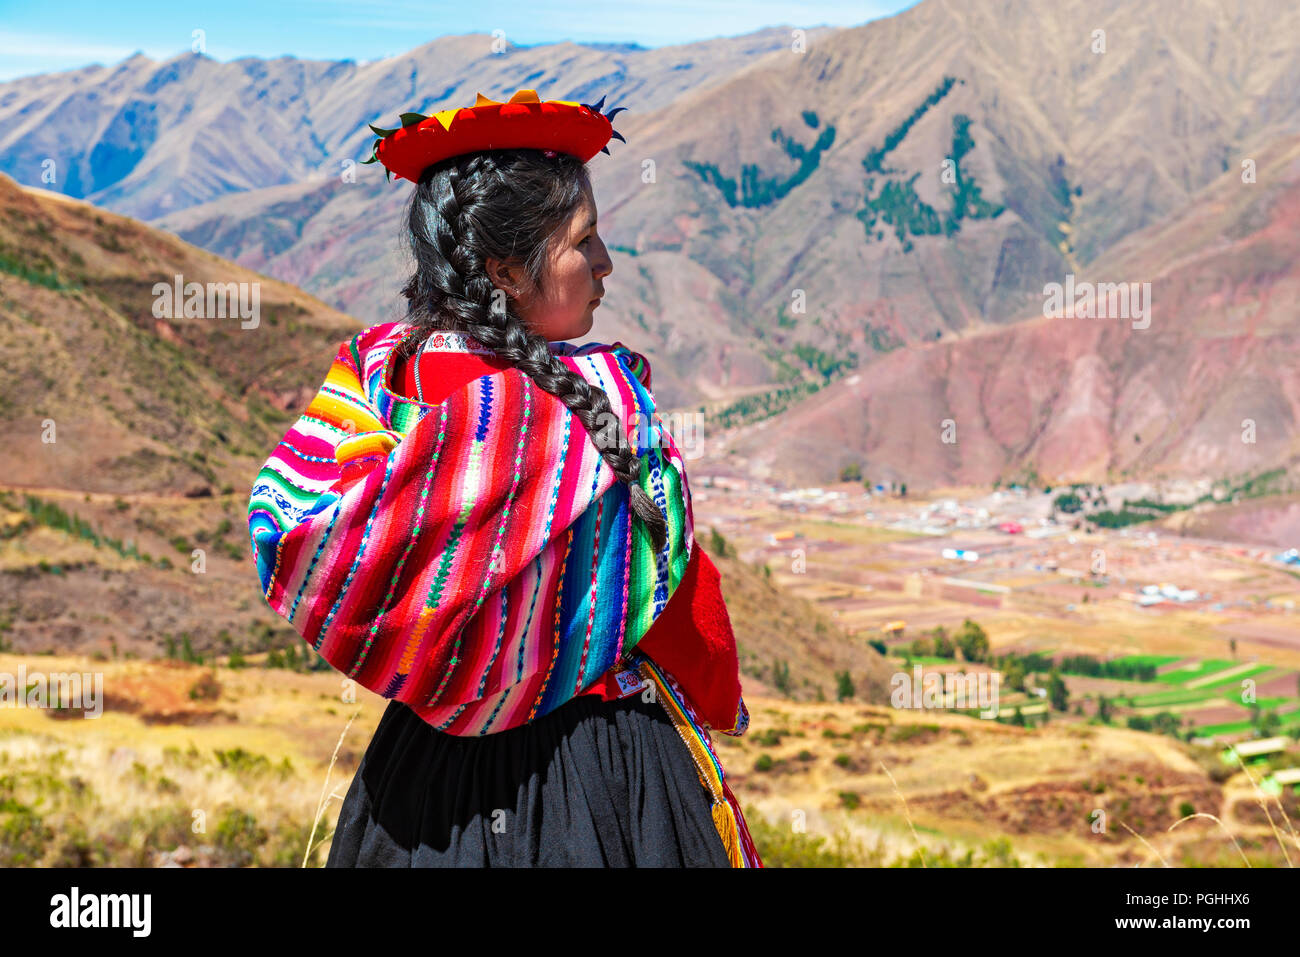 Jeunes autochtones Quechua girl looking at la Vallée sacrée de l'Inca dans la cordillère des Andes dans la ruine Inca de Tipon près de Cusco, ville du Pérou. Banque D'Images